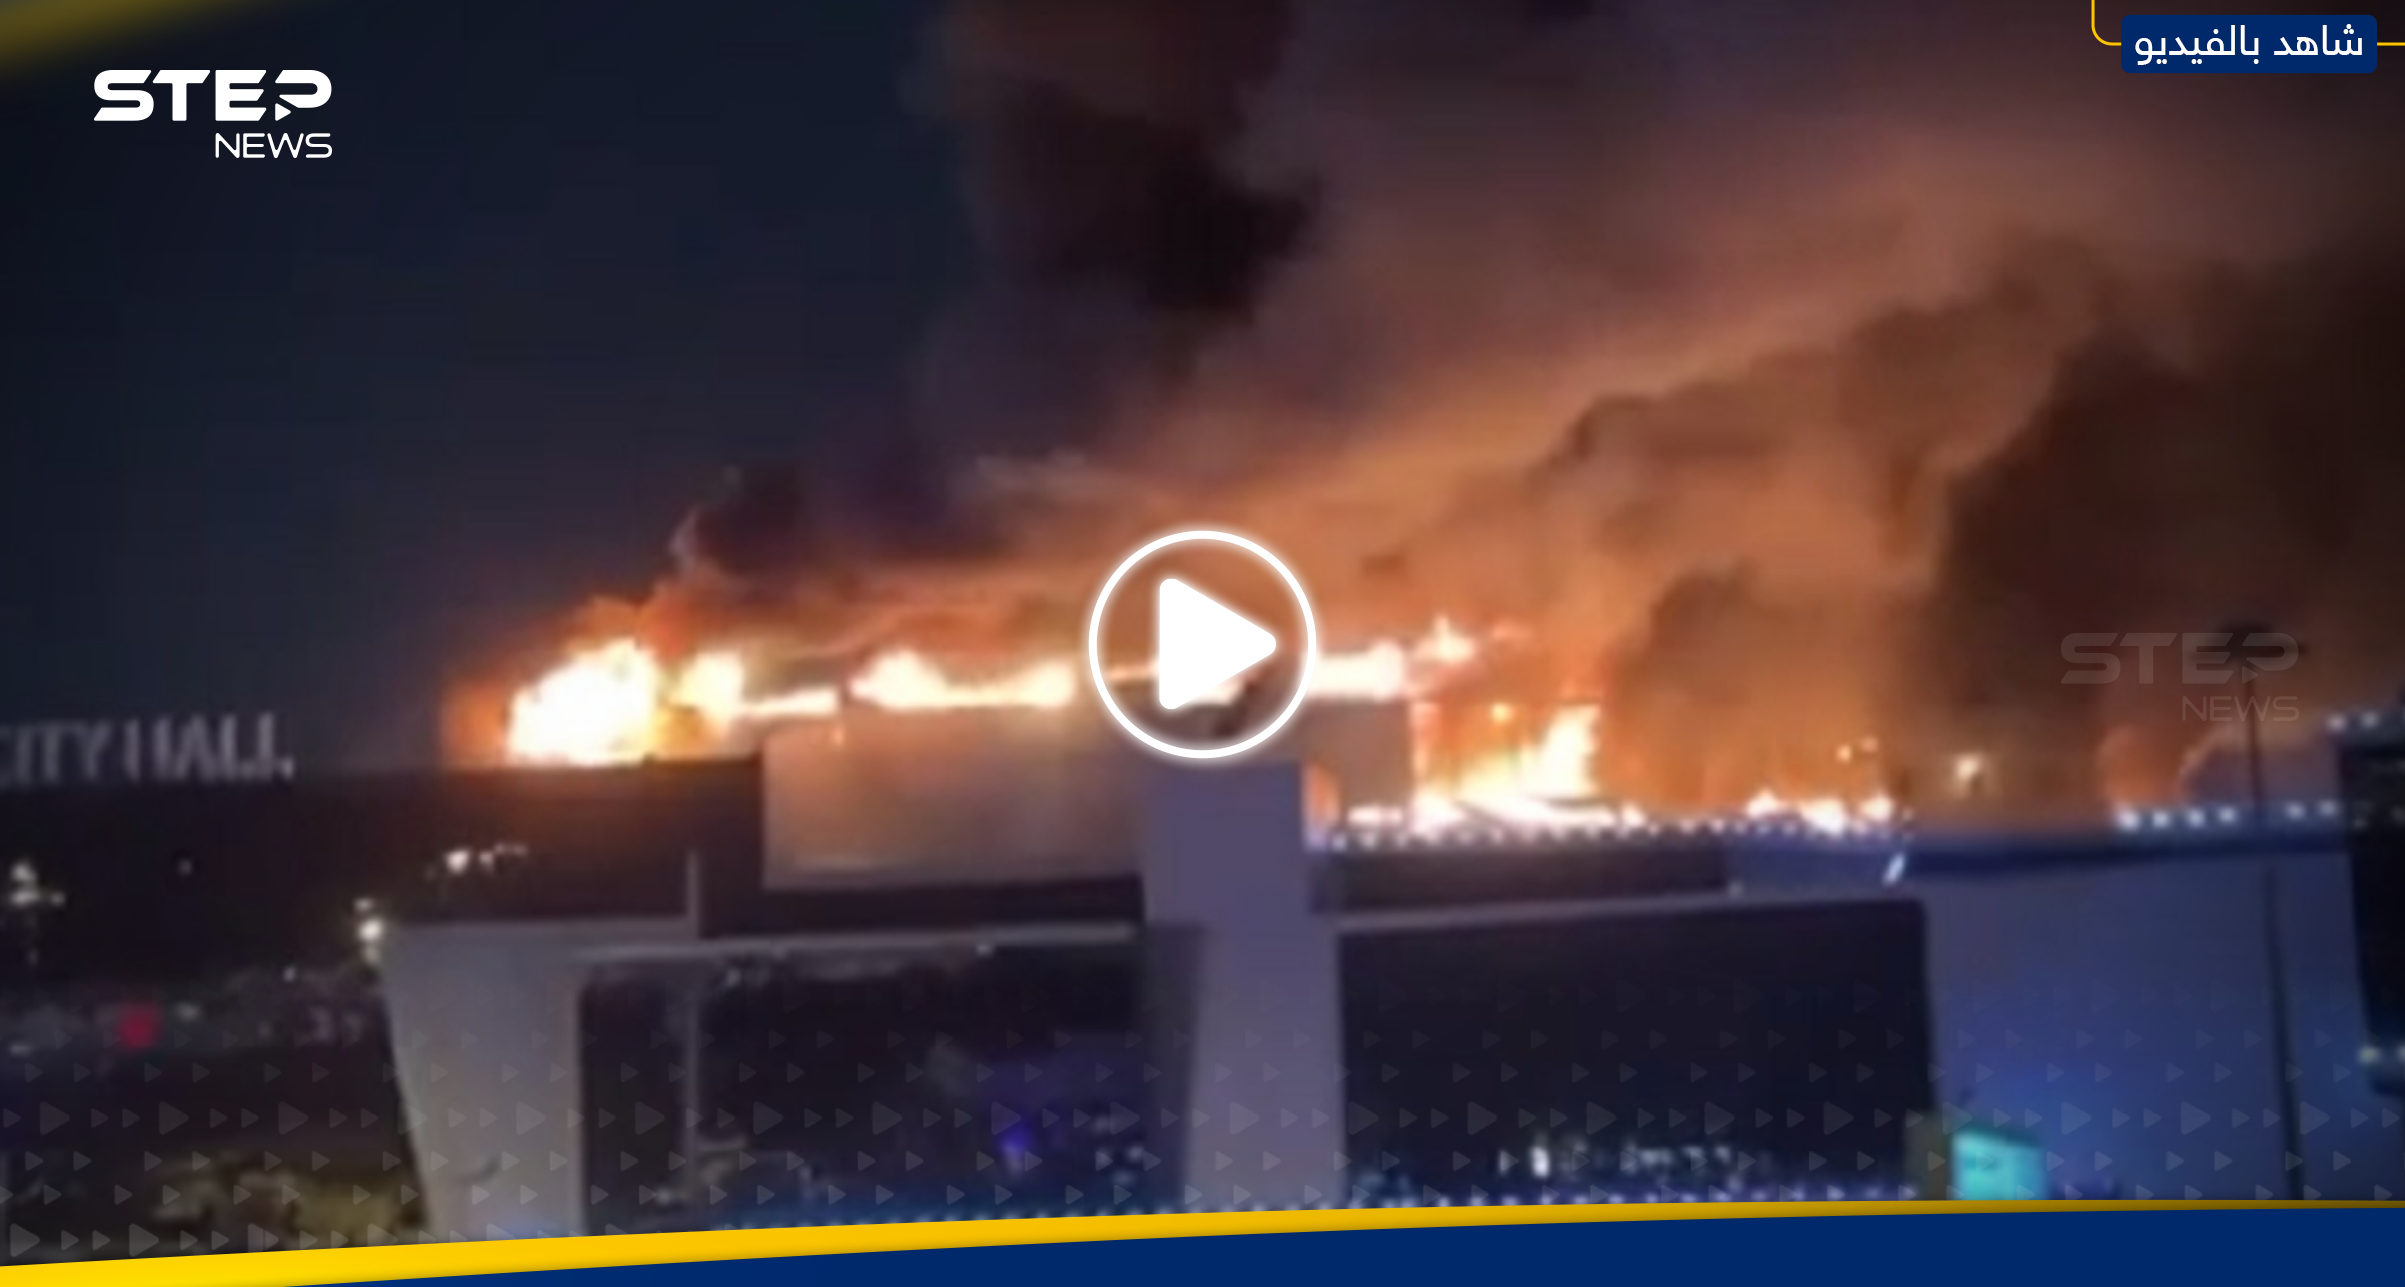 بالفيديو|| قتلى وجرحى بحادثة إطلاق نار في موسكو وانفجار ضخم بالمبنى 